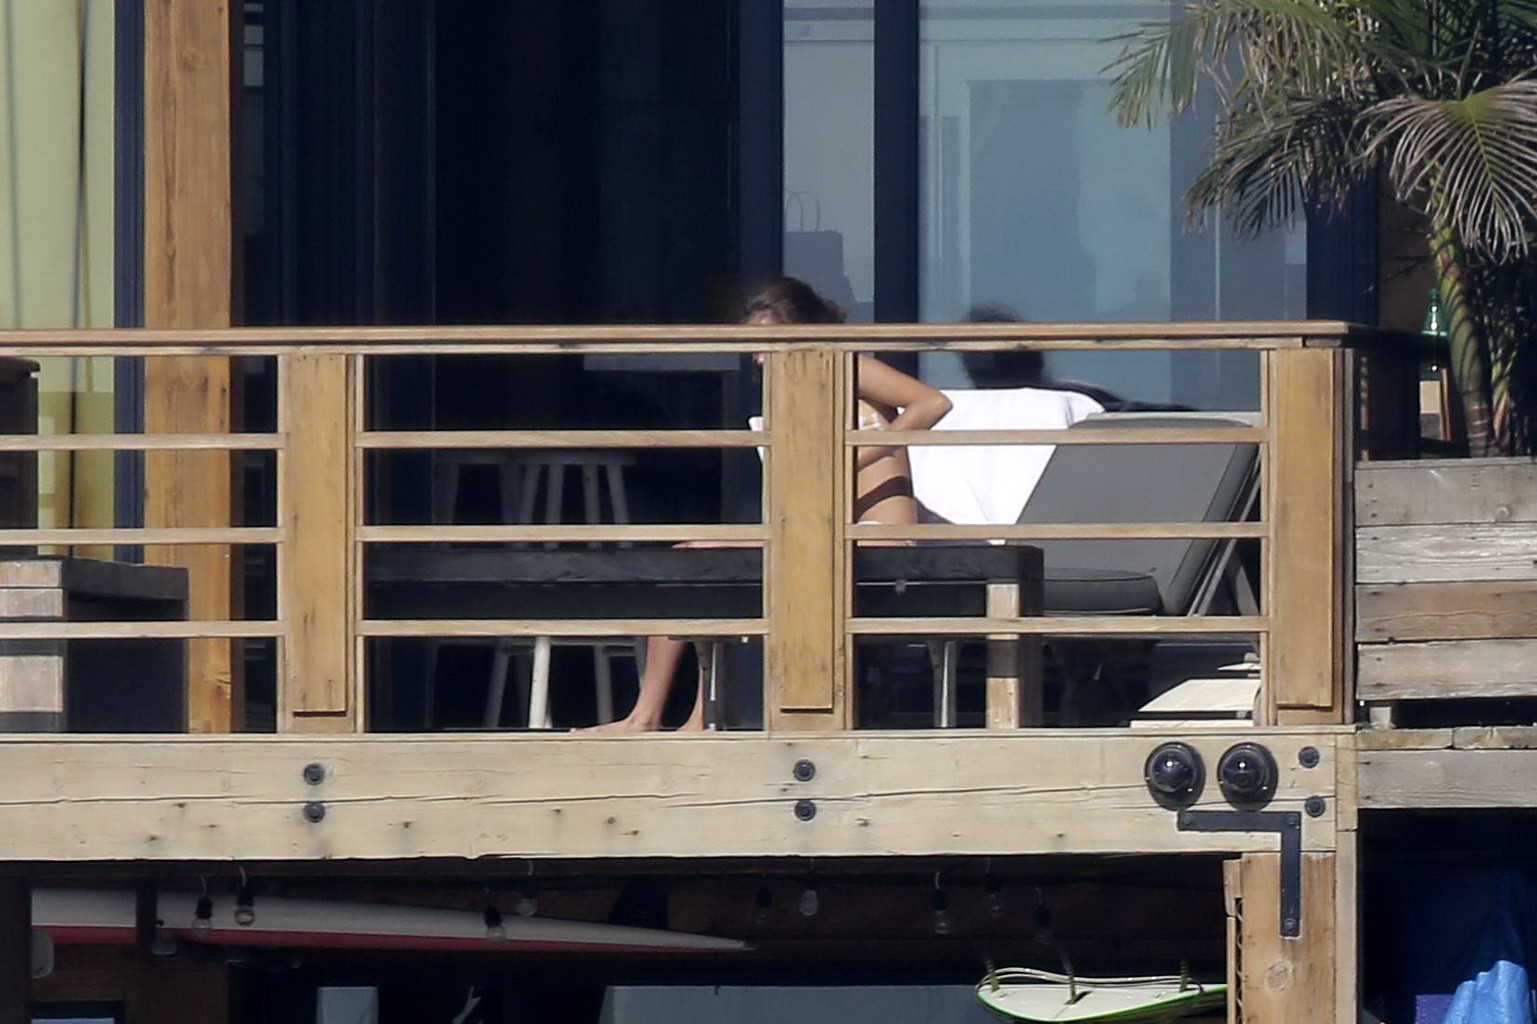 Cara delevingne bräunt sich oben ohne auf einem Balkon in Malibu
 #75174959